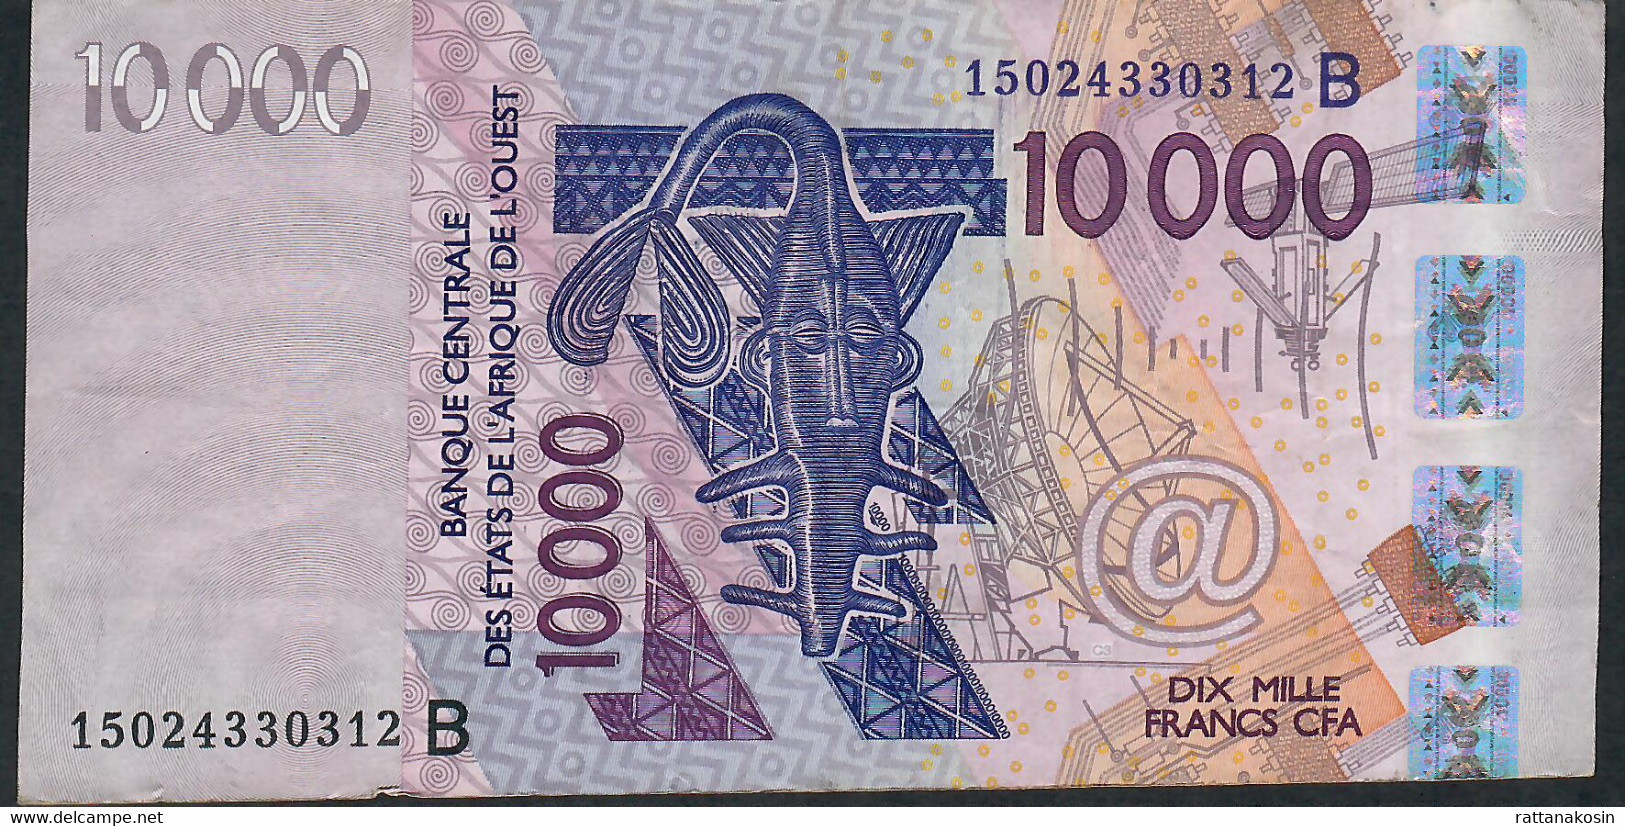 W.A.S. BENIN P218Bo 10000 Francs (20)15 VF No Tear,no P.h. - Benin